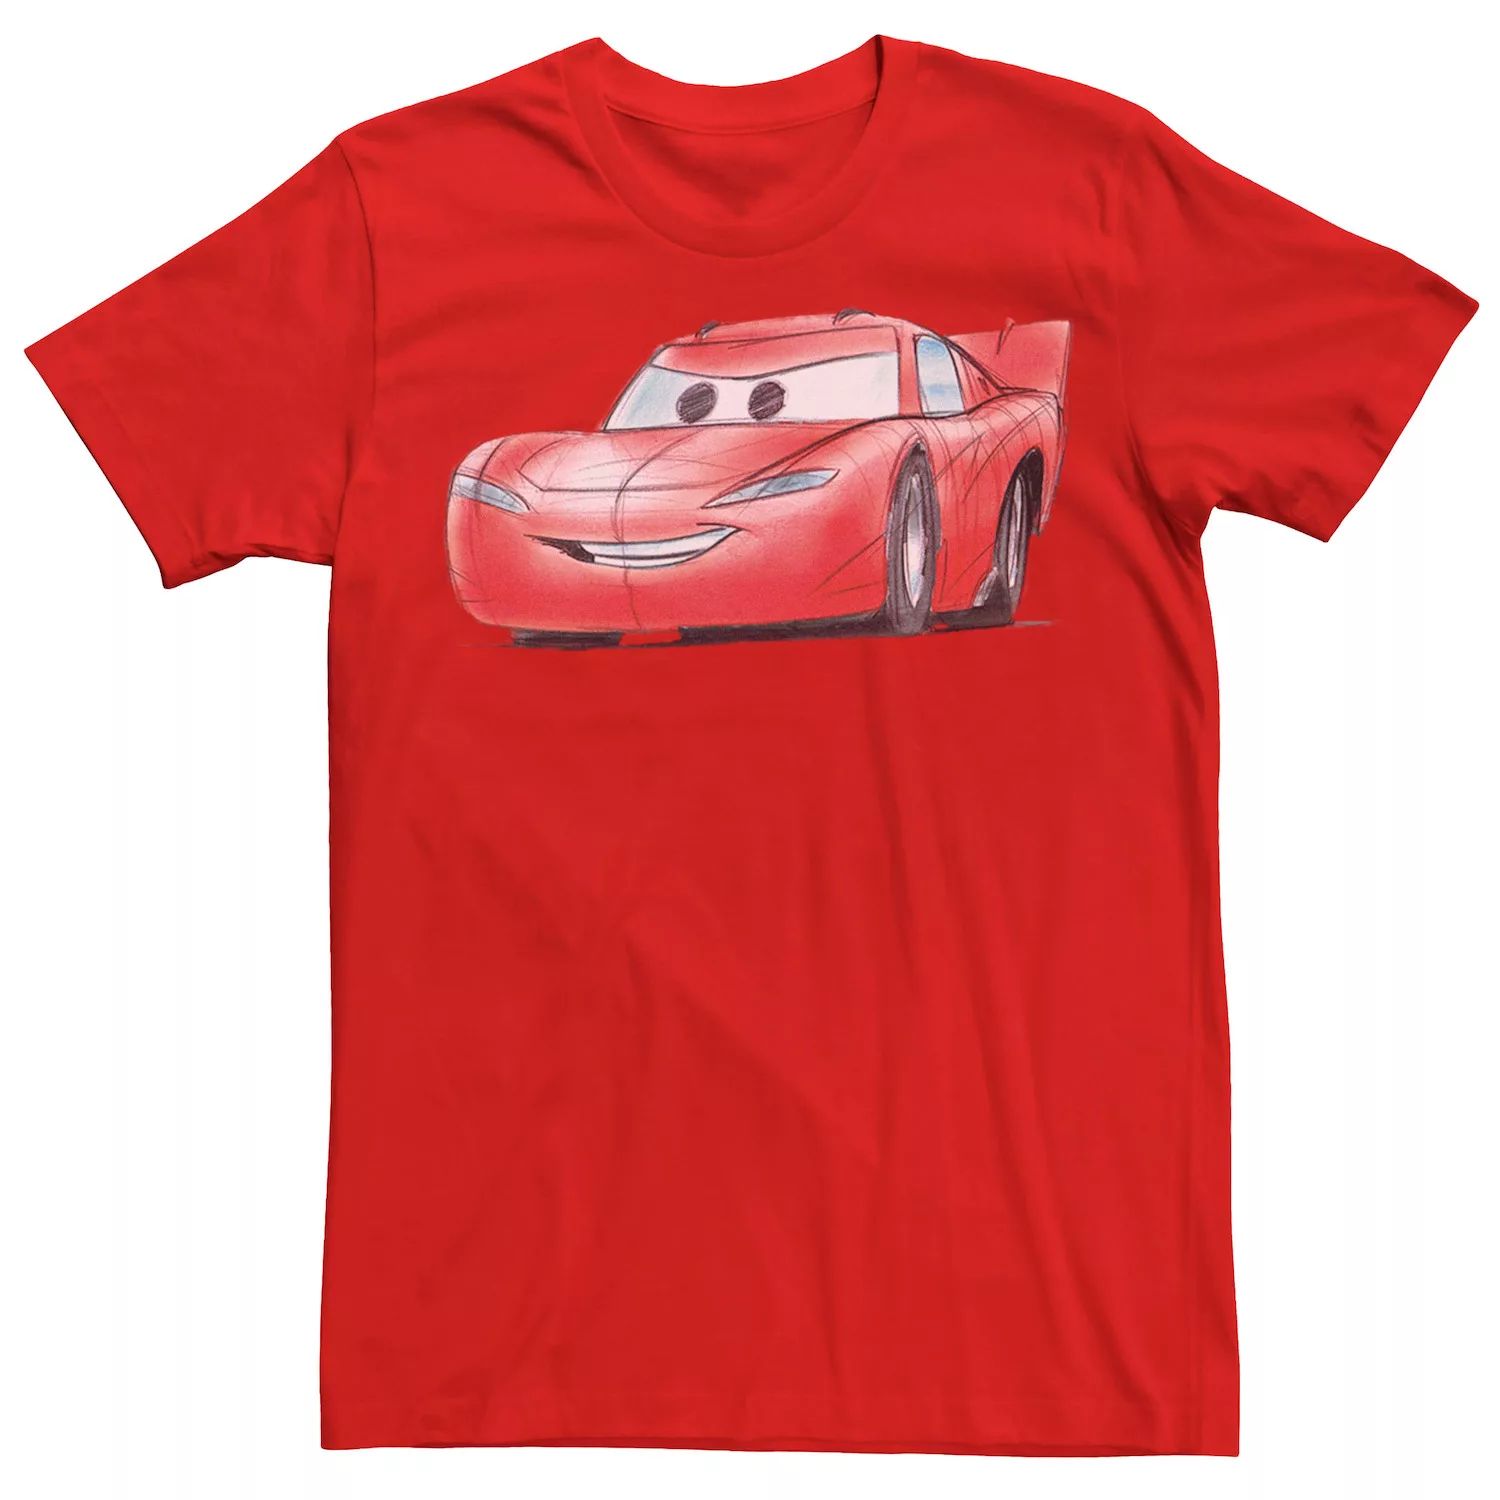 Мужская футболка с профилем Lightning McQueen Cars Disney / Pixar